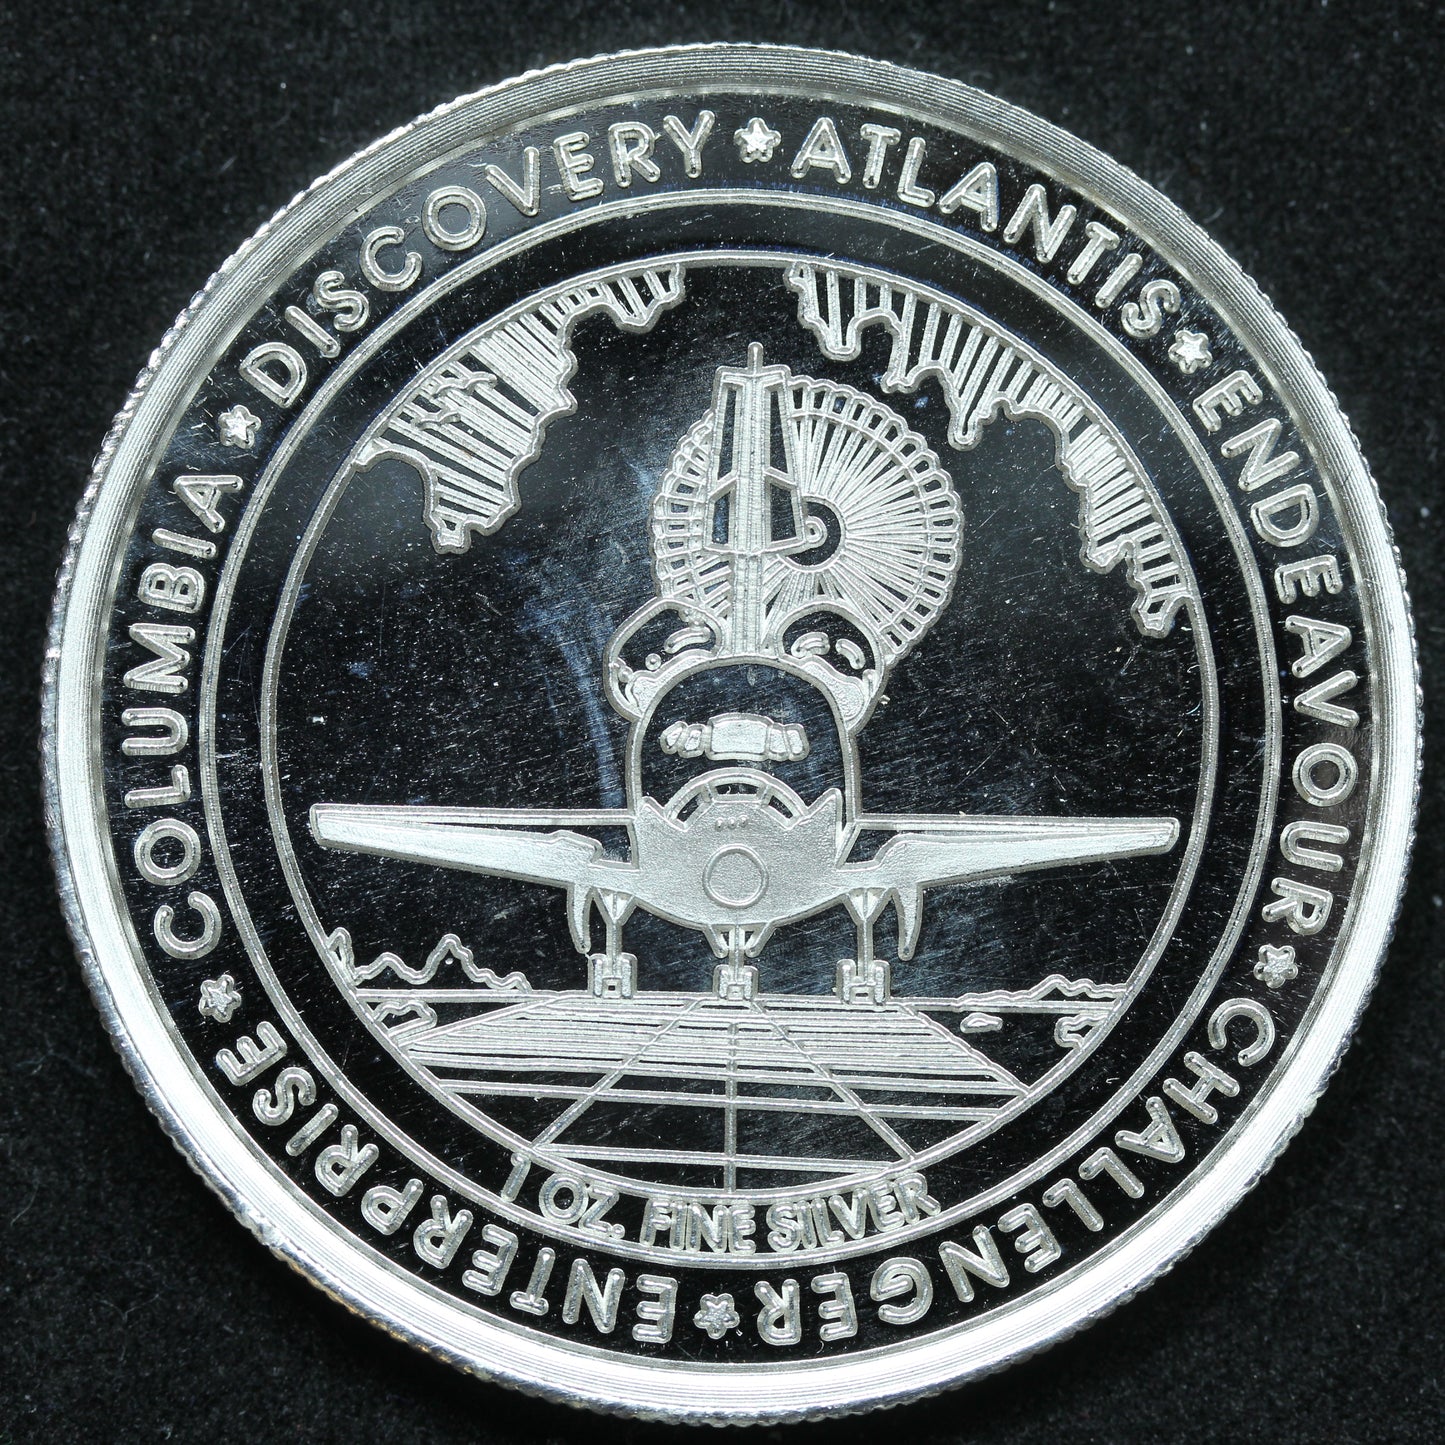 1 oz .999 Fine Silver Round - 1981-2011 NASA Space Shuttle Program w/ Capsule